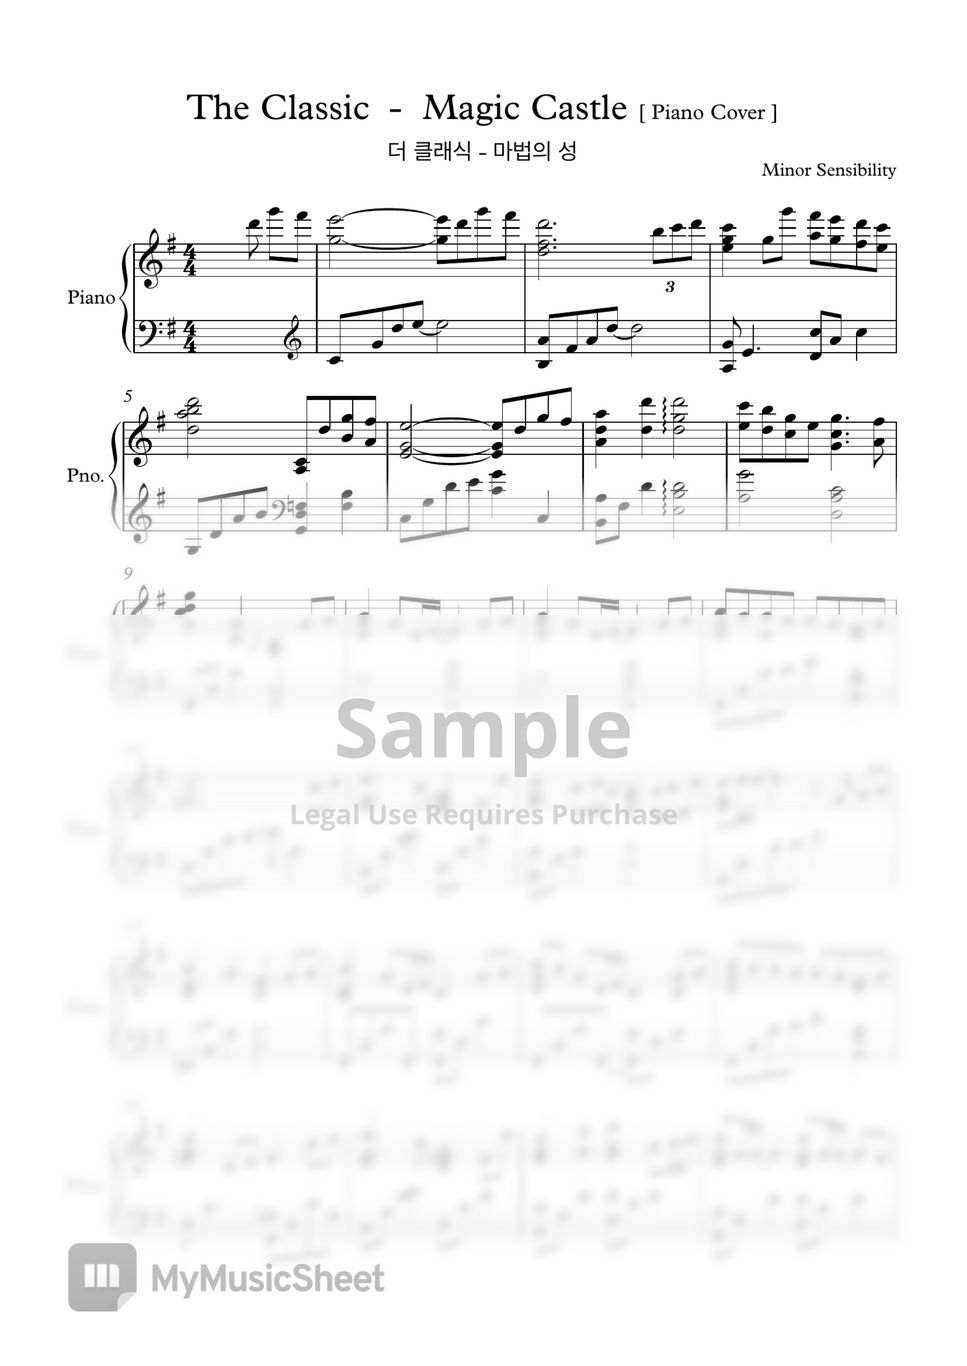 The Classic - Magic Castle (Piano Cover) by Minor Sensibility